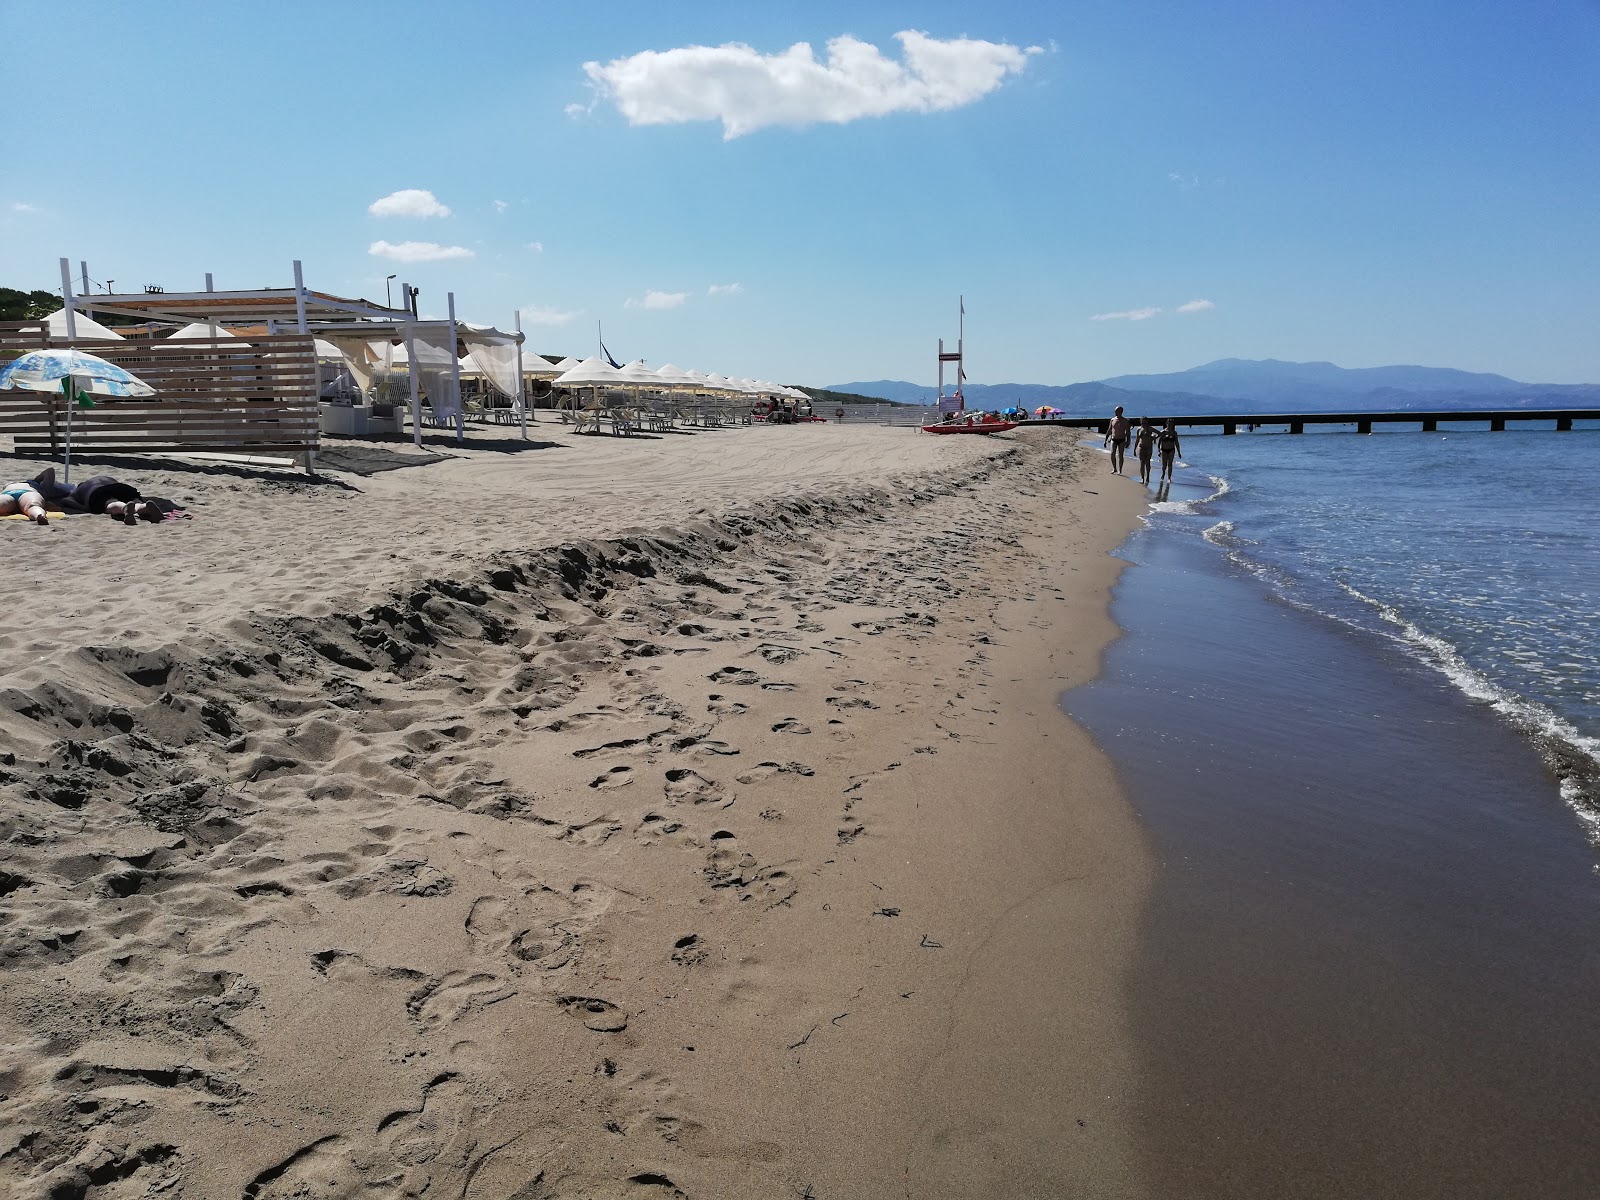 Paestum beach'in fotoğrafı mavi sular yüzey ile